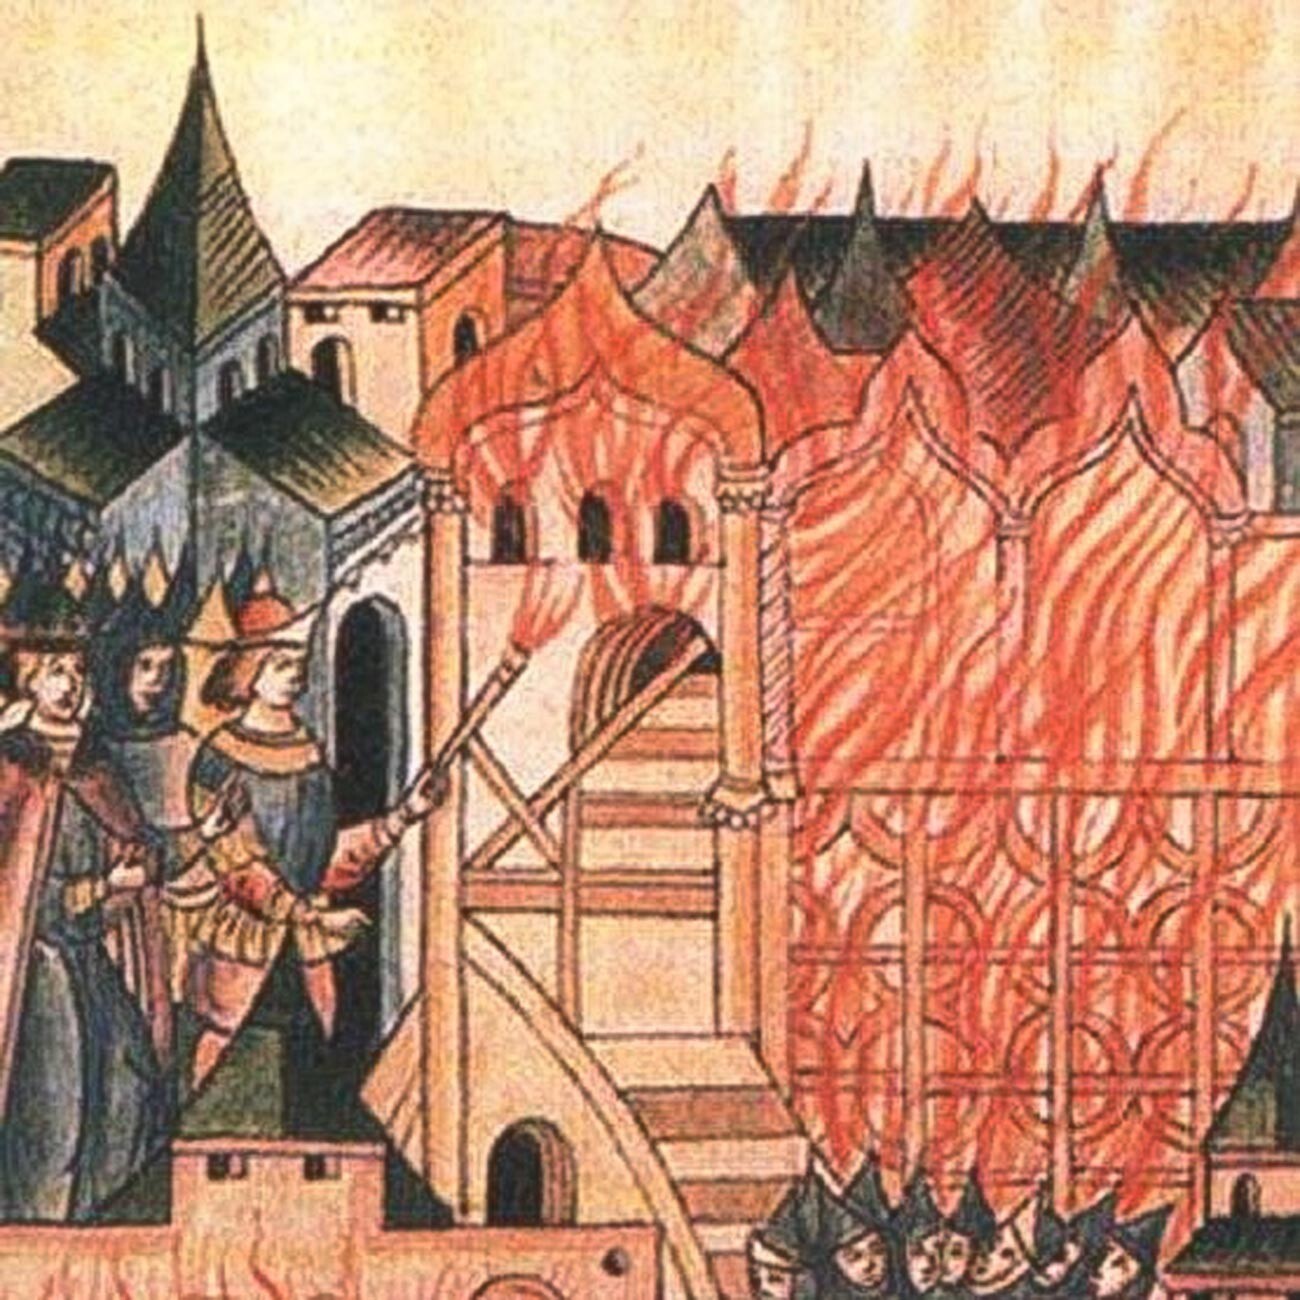 Tverska pobuna iz 1328. godine opisana u ruskoj kronici iz 16. stoljeća. 